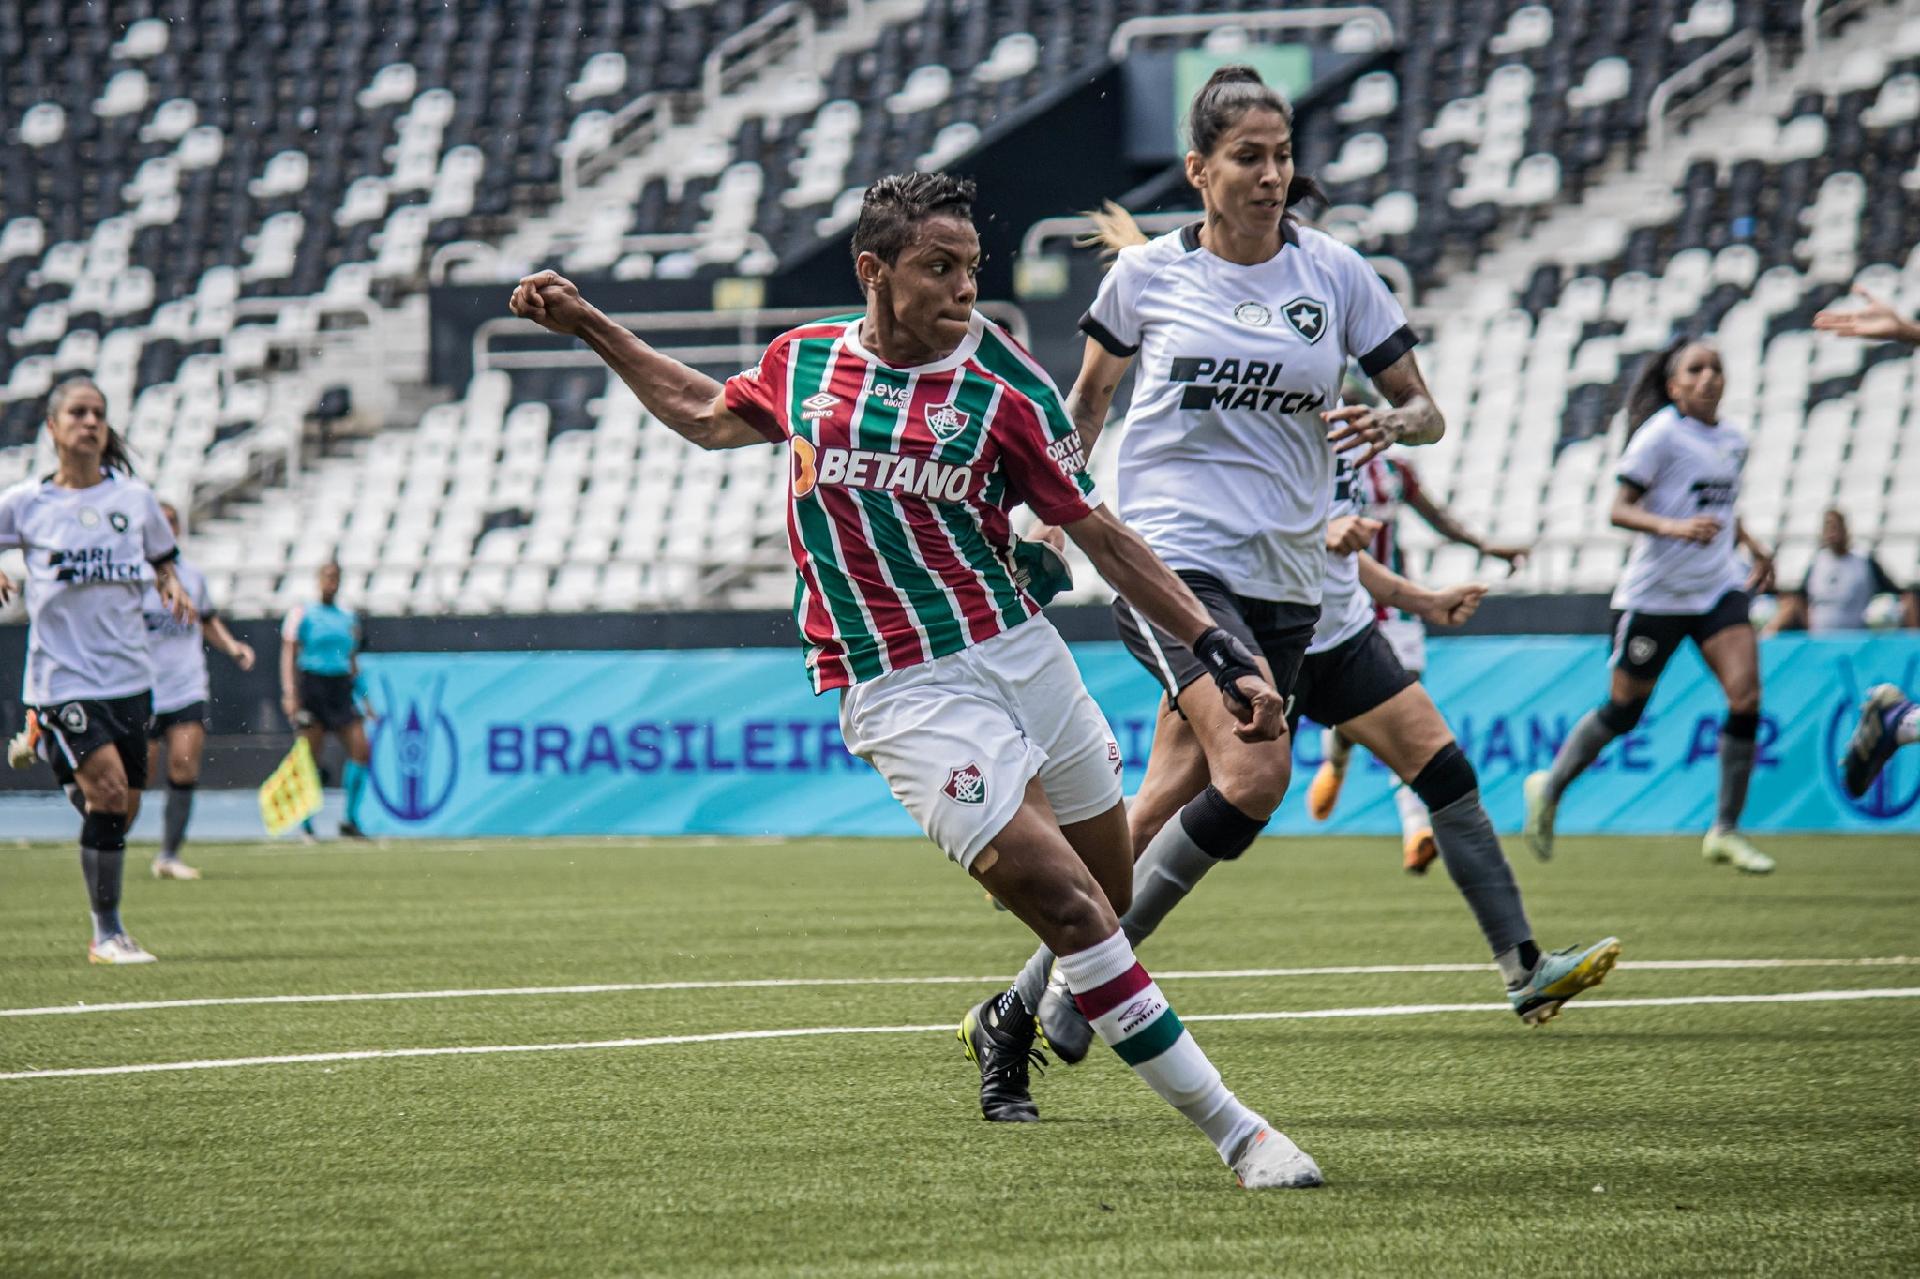 Fluminense estreia com goleada por 9 a 0 no Brasileirão Feminino